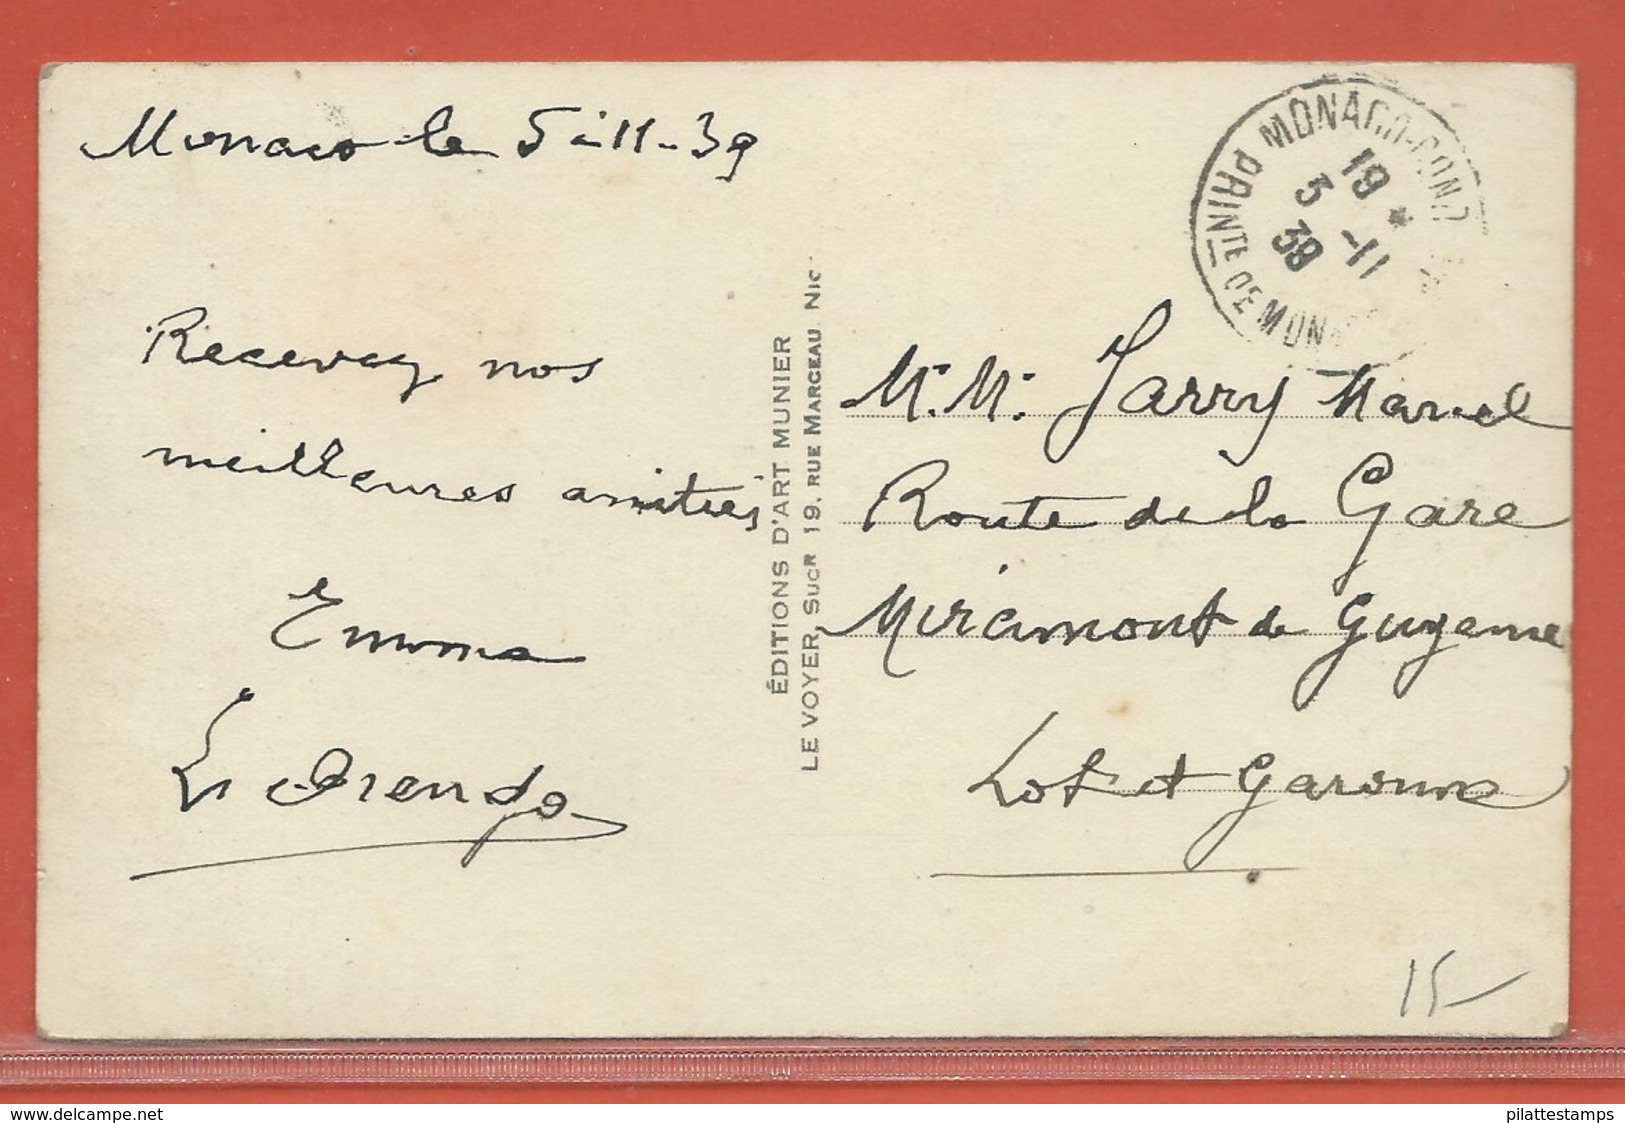 MONACO CARTE POSTALE AFFRANCHIE DE 1939 POUR MIRCIMONT FRANCE - Lettres & Documents